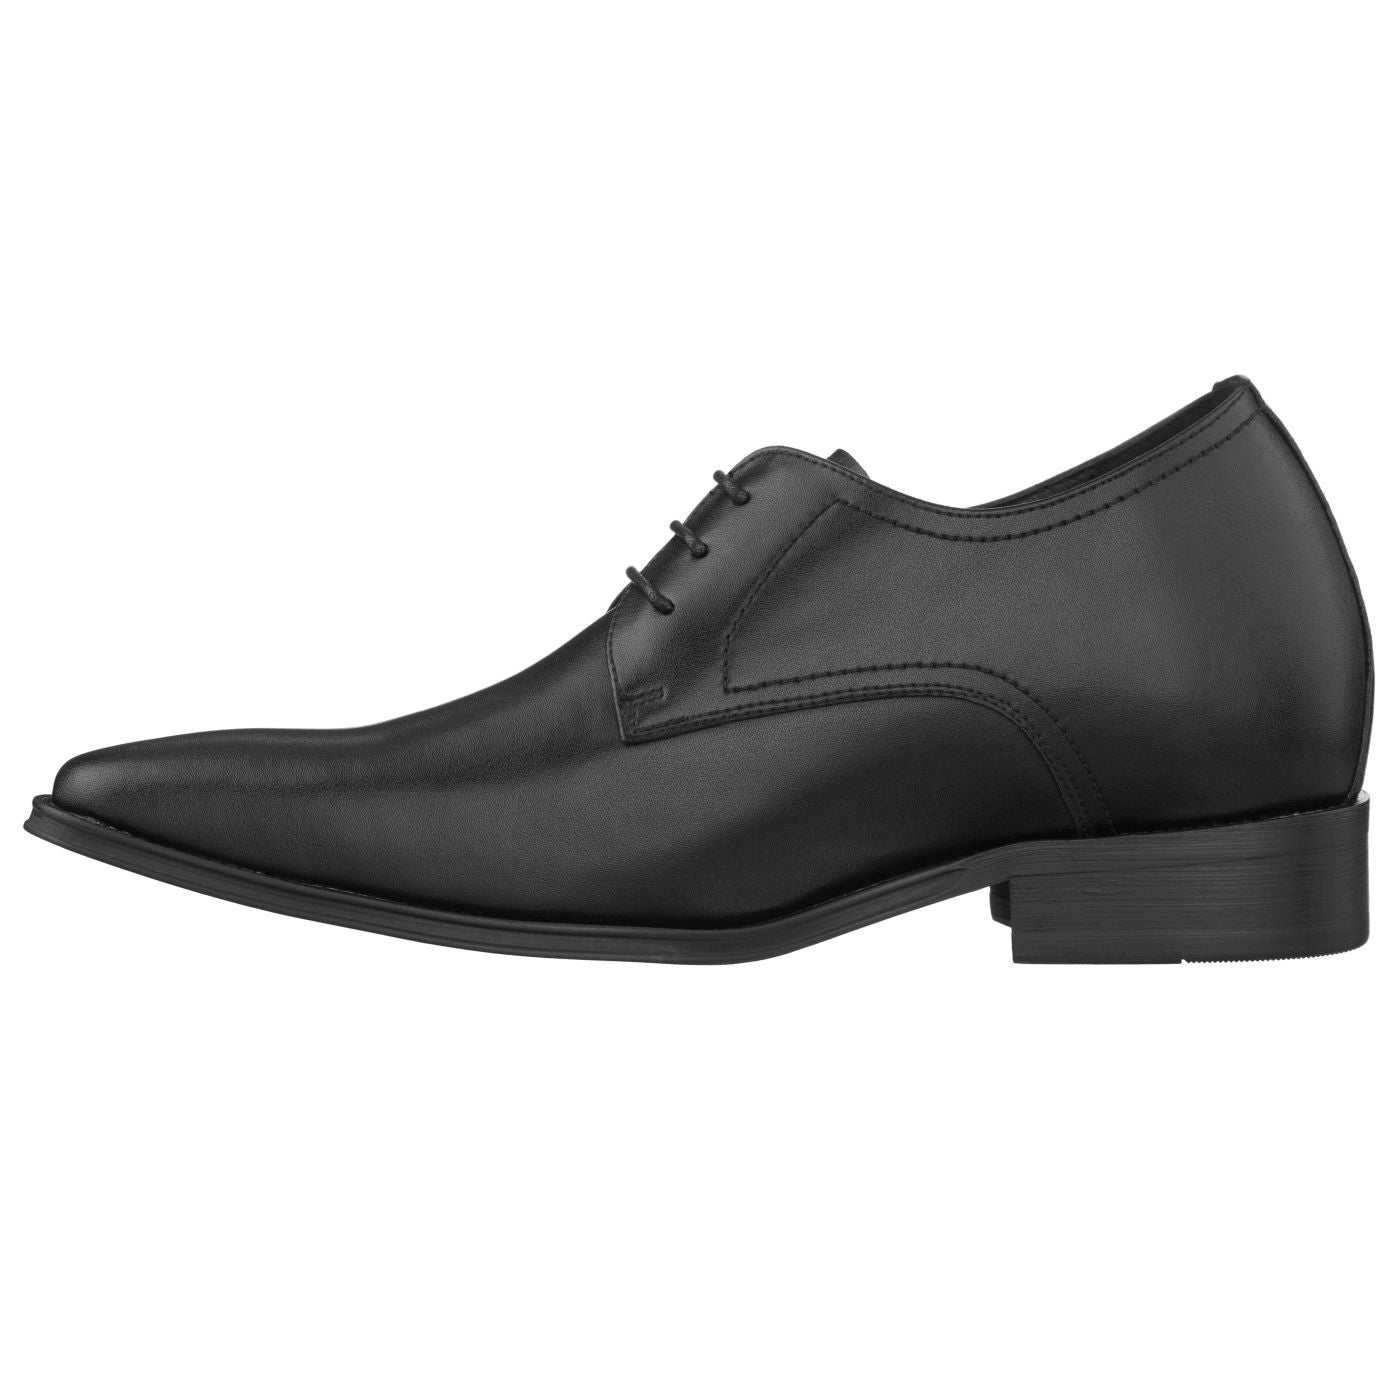 CALTO Black Leather Dress Shoes - TallMenShoes.com – Tallmenshoes.com